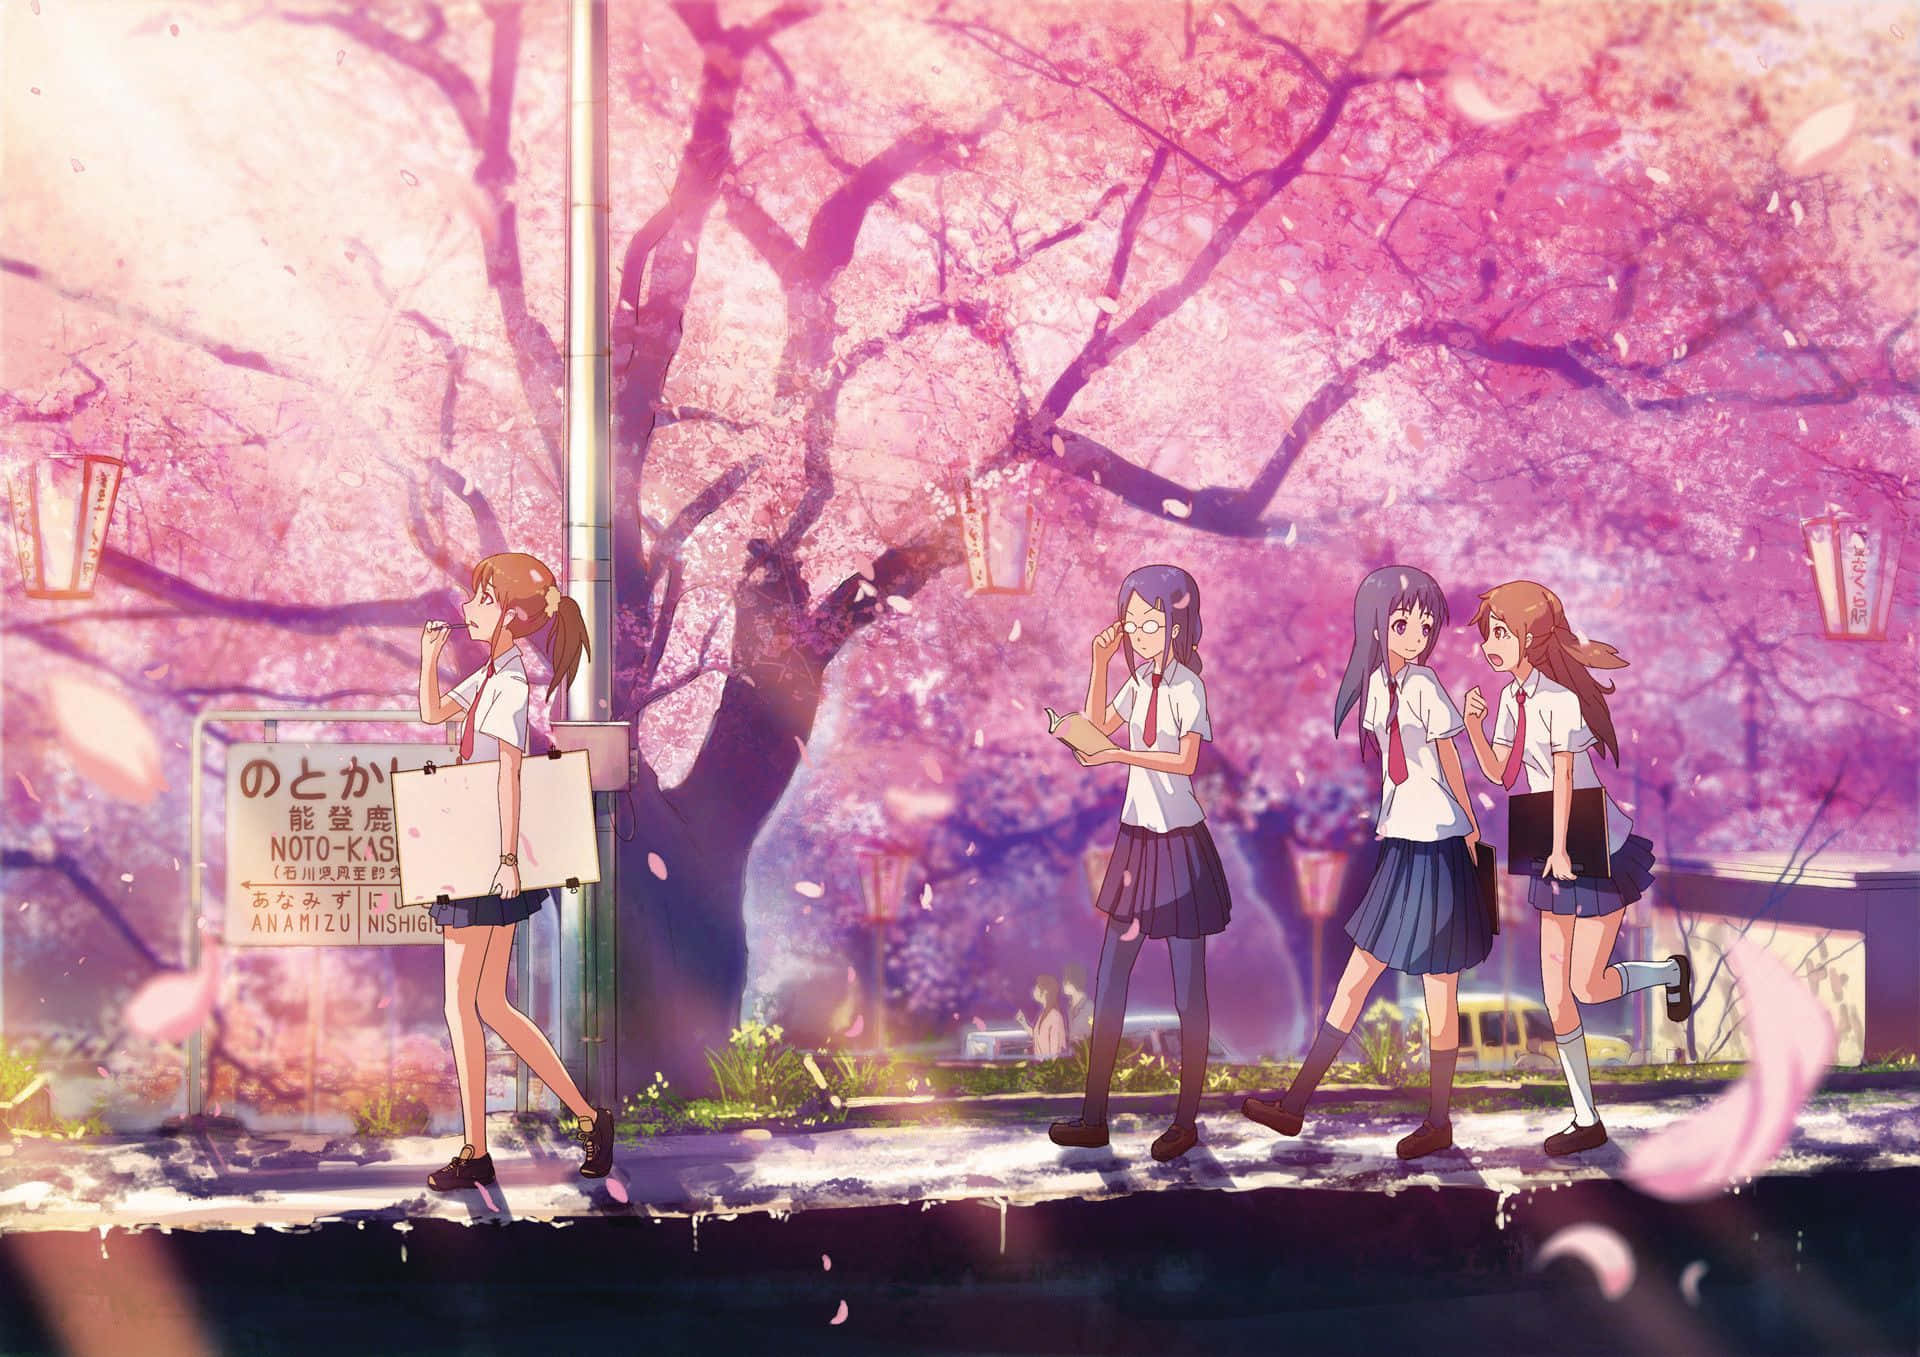 Ilustracióndigital De Chicas Escolares De Anime Sakura Fondo de pantalla